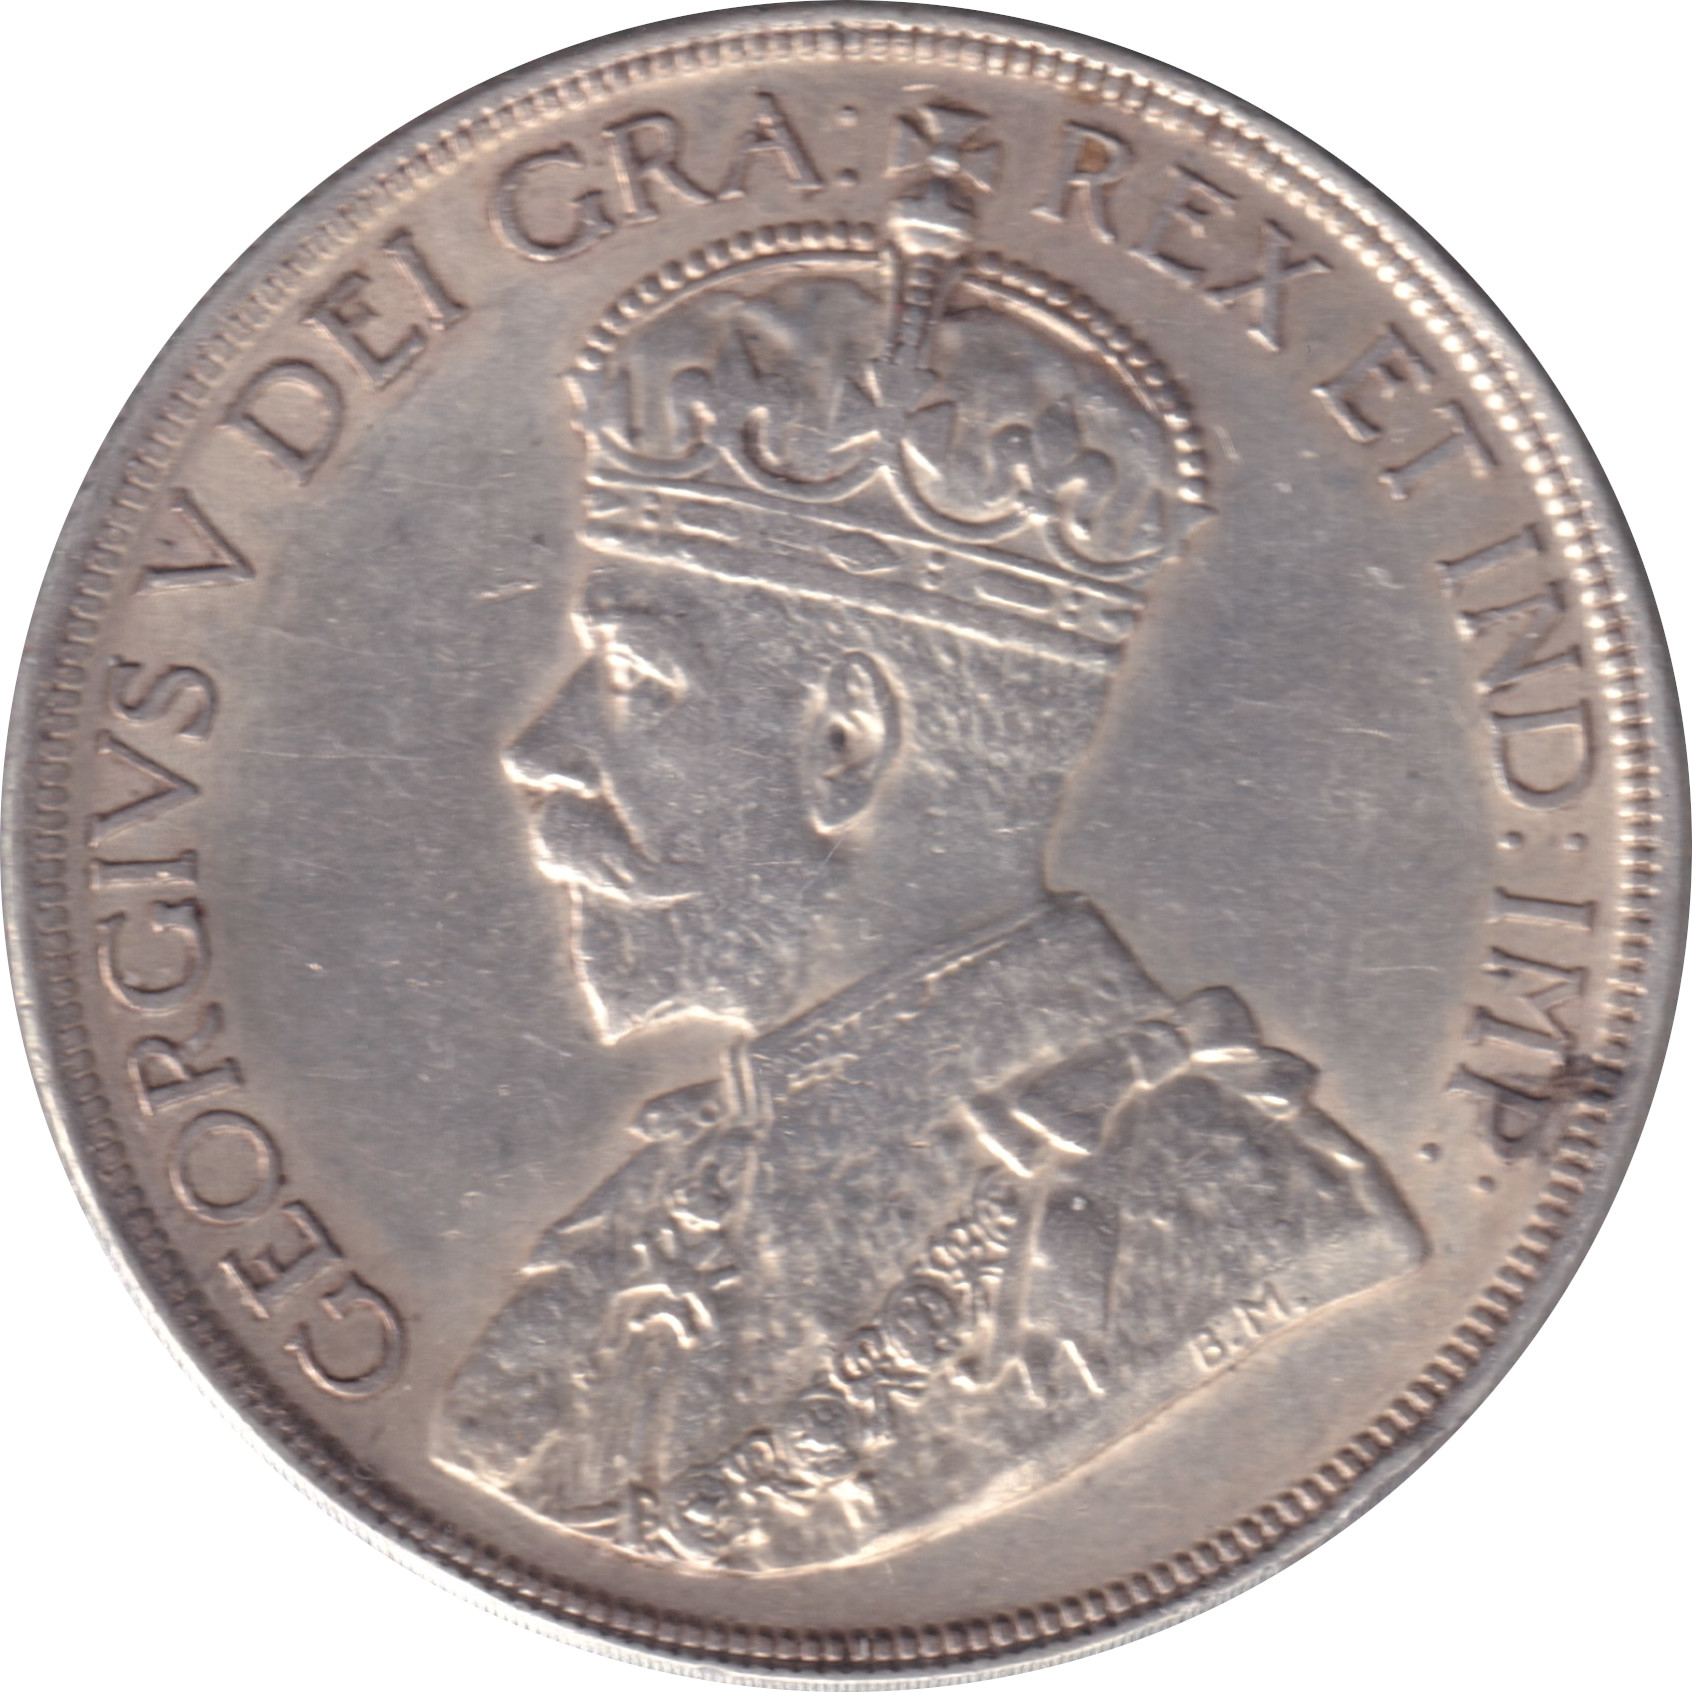 1 dollar - George V